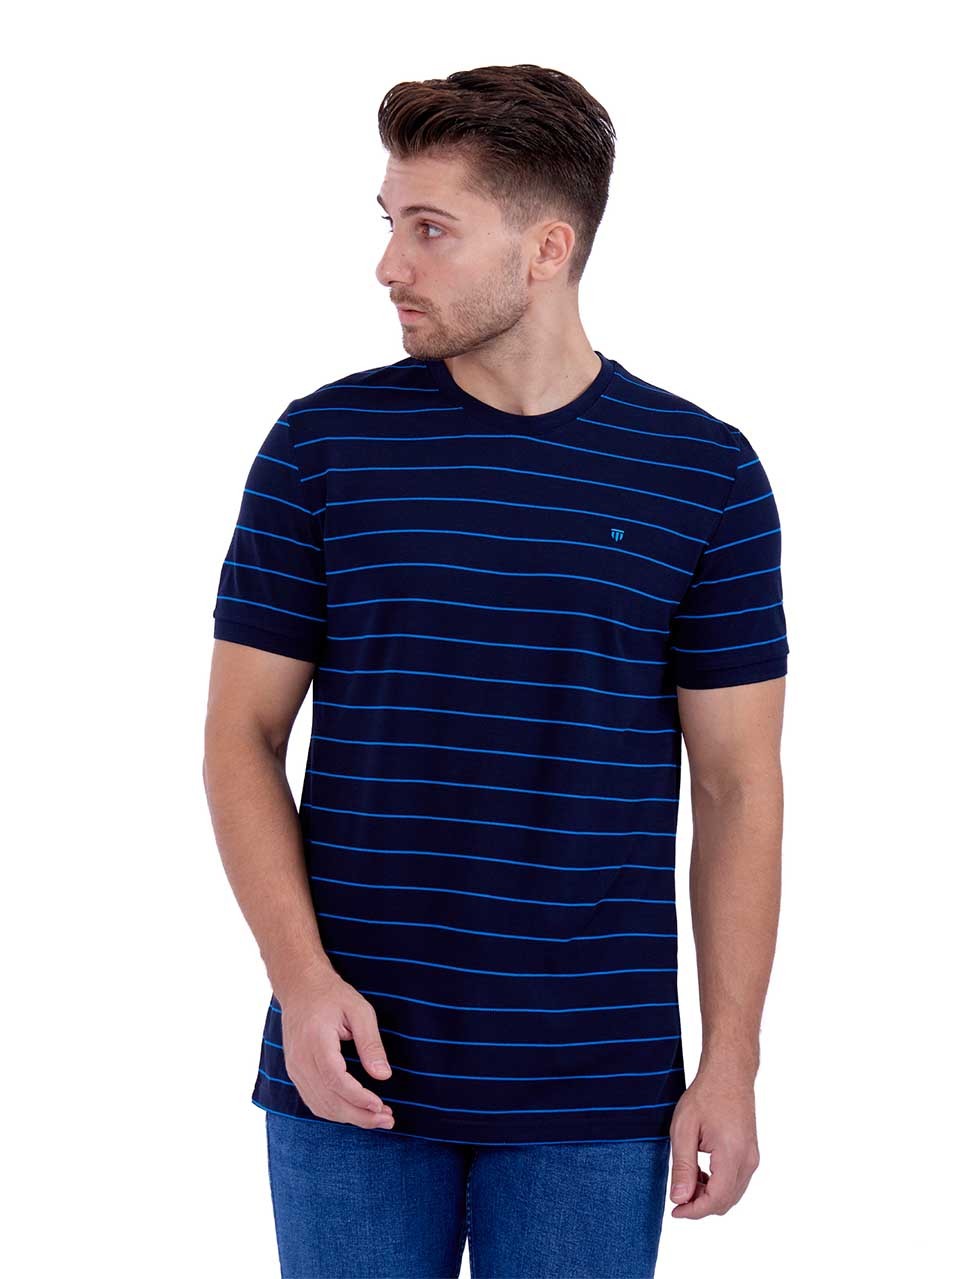 Striped Navy t-shirt